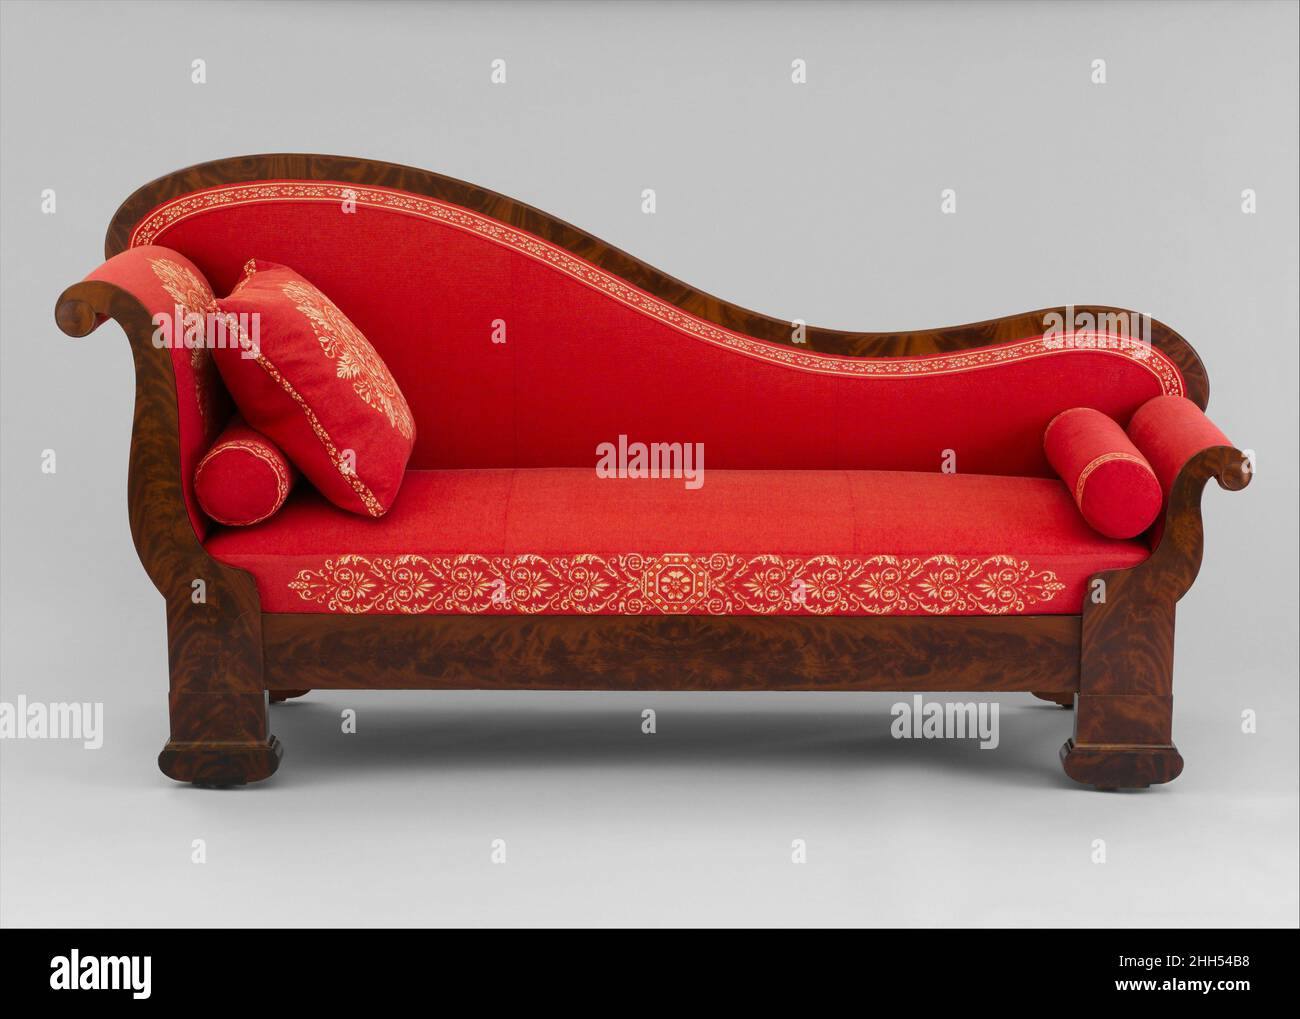 Ancient greek couch immagini e fotografie stock ad alta risoluzione - Alamy